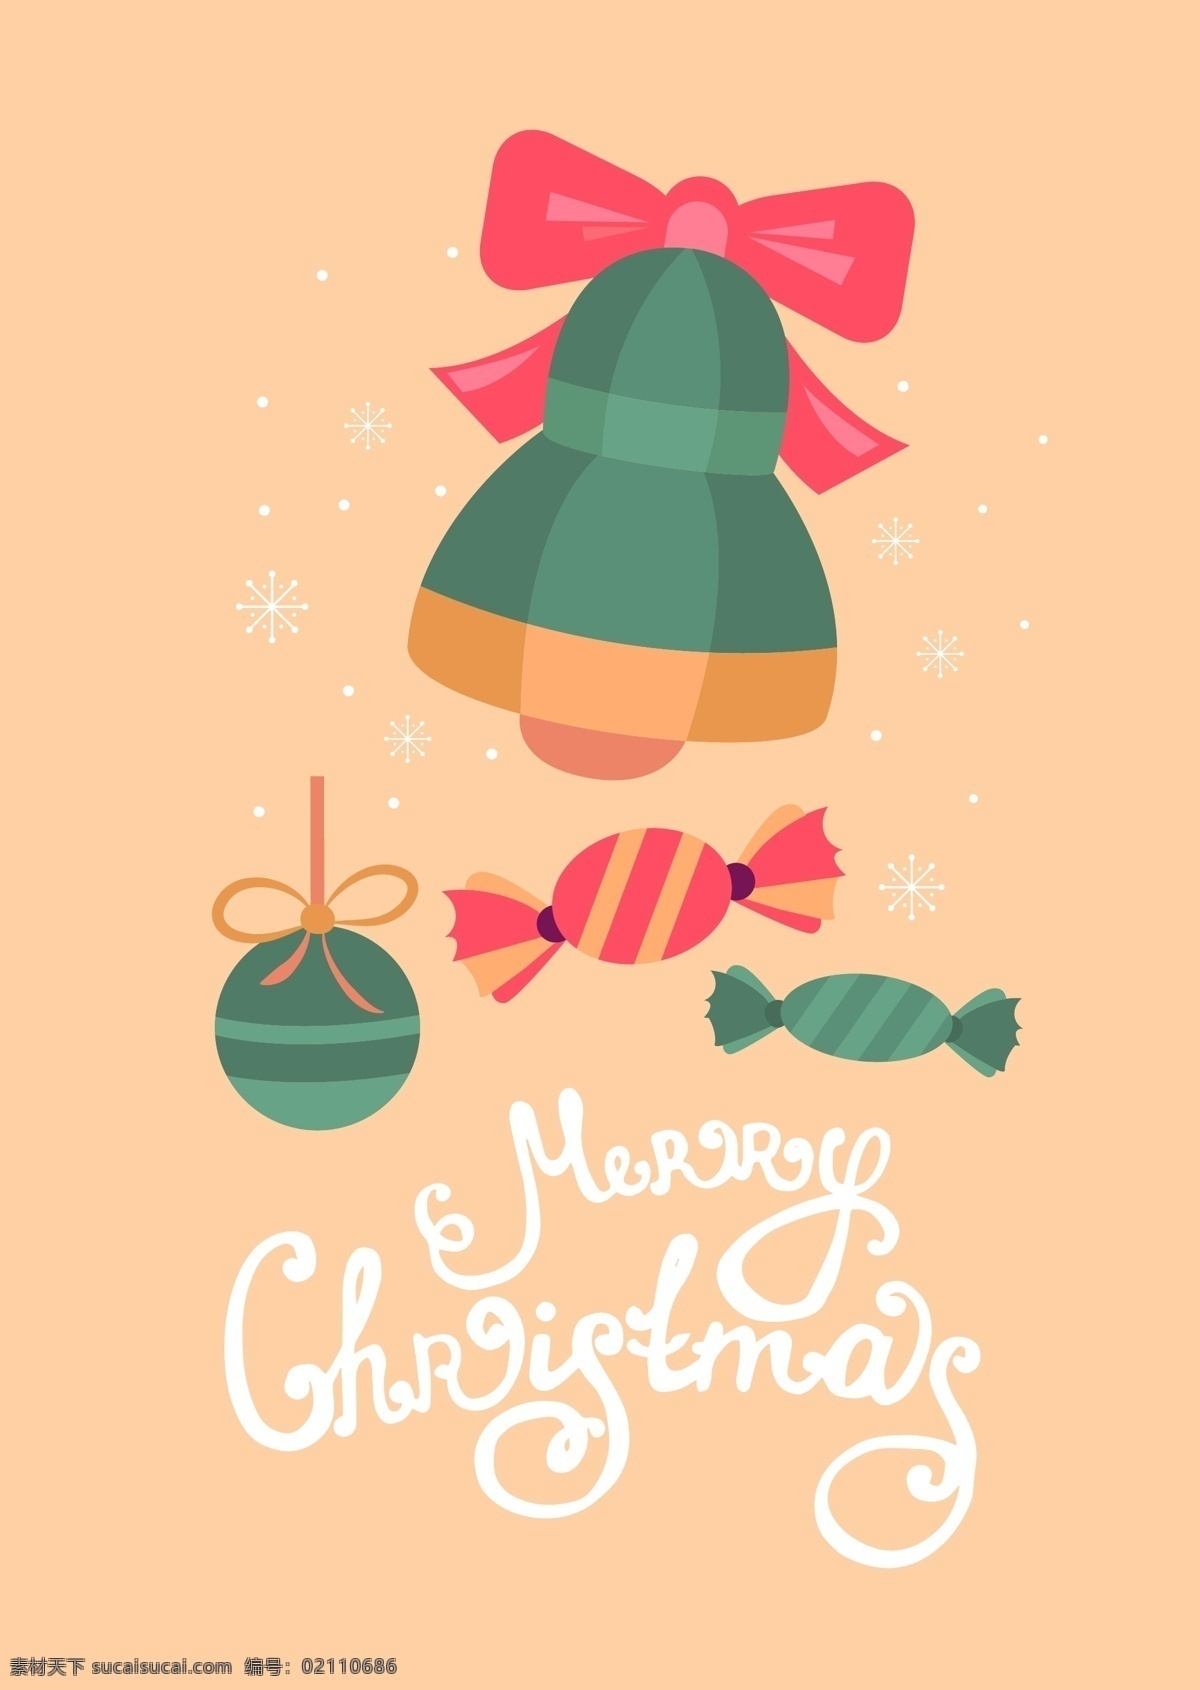 各种 节日 小 礼品 卡通 矢量 蝴蝶结 铃铛 平面素材 设计素材 圣诞球 矢量素材 糖果